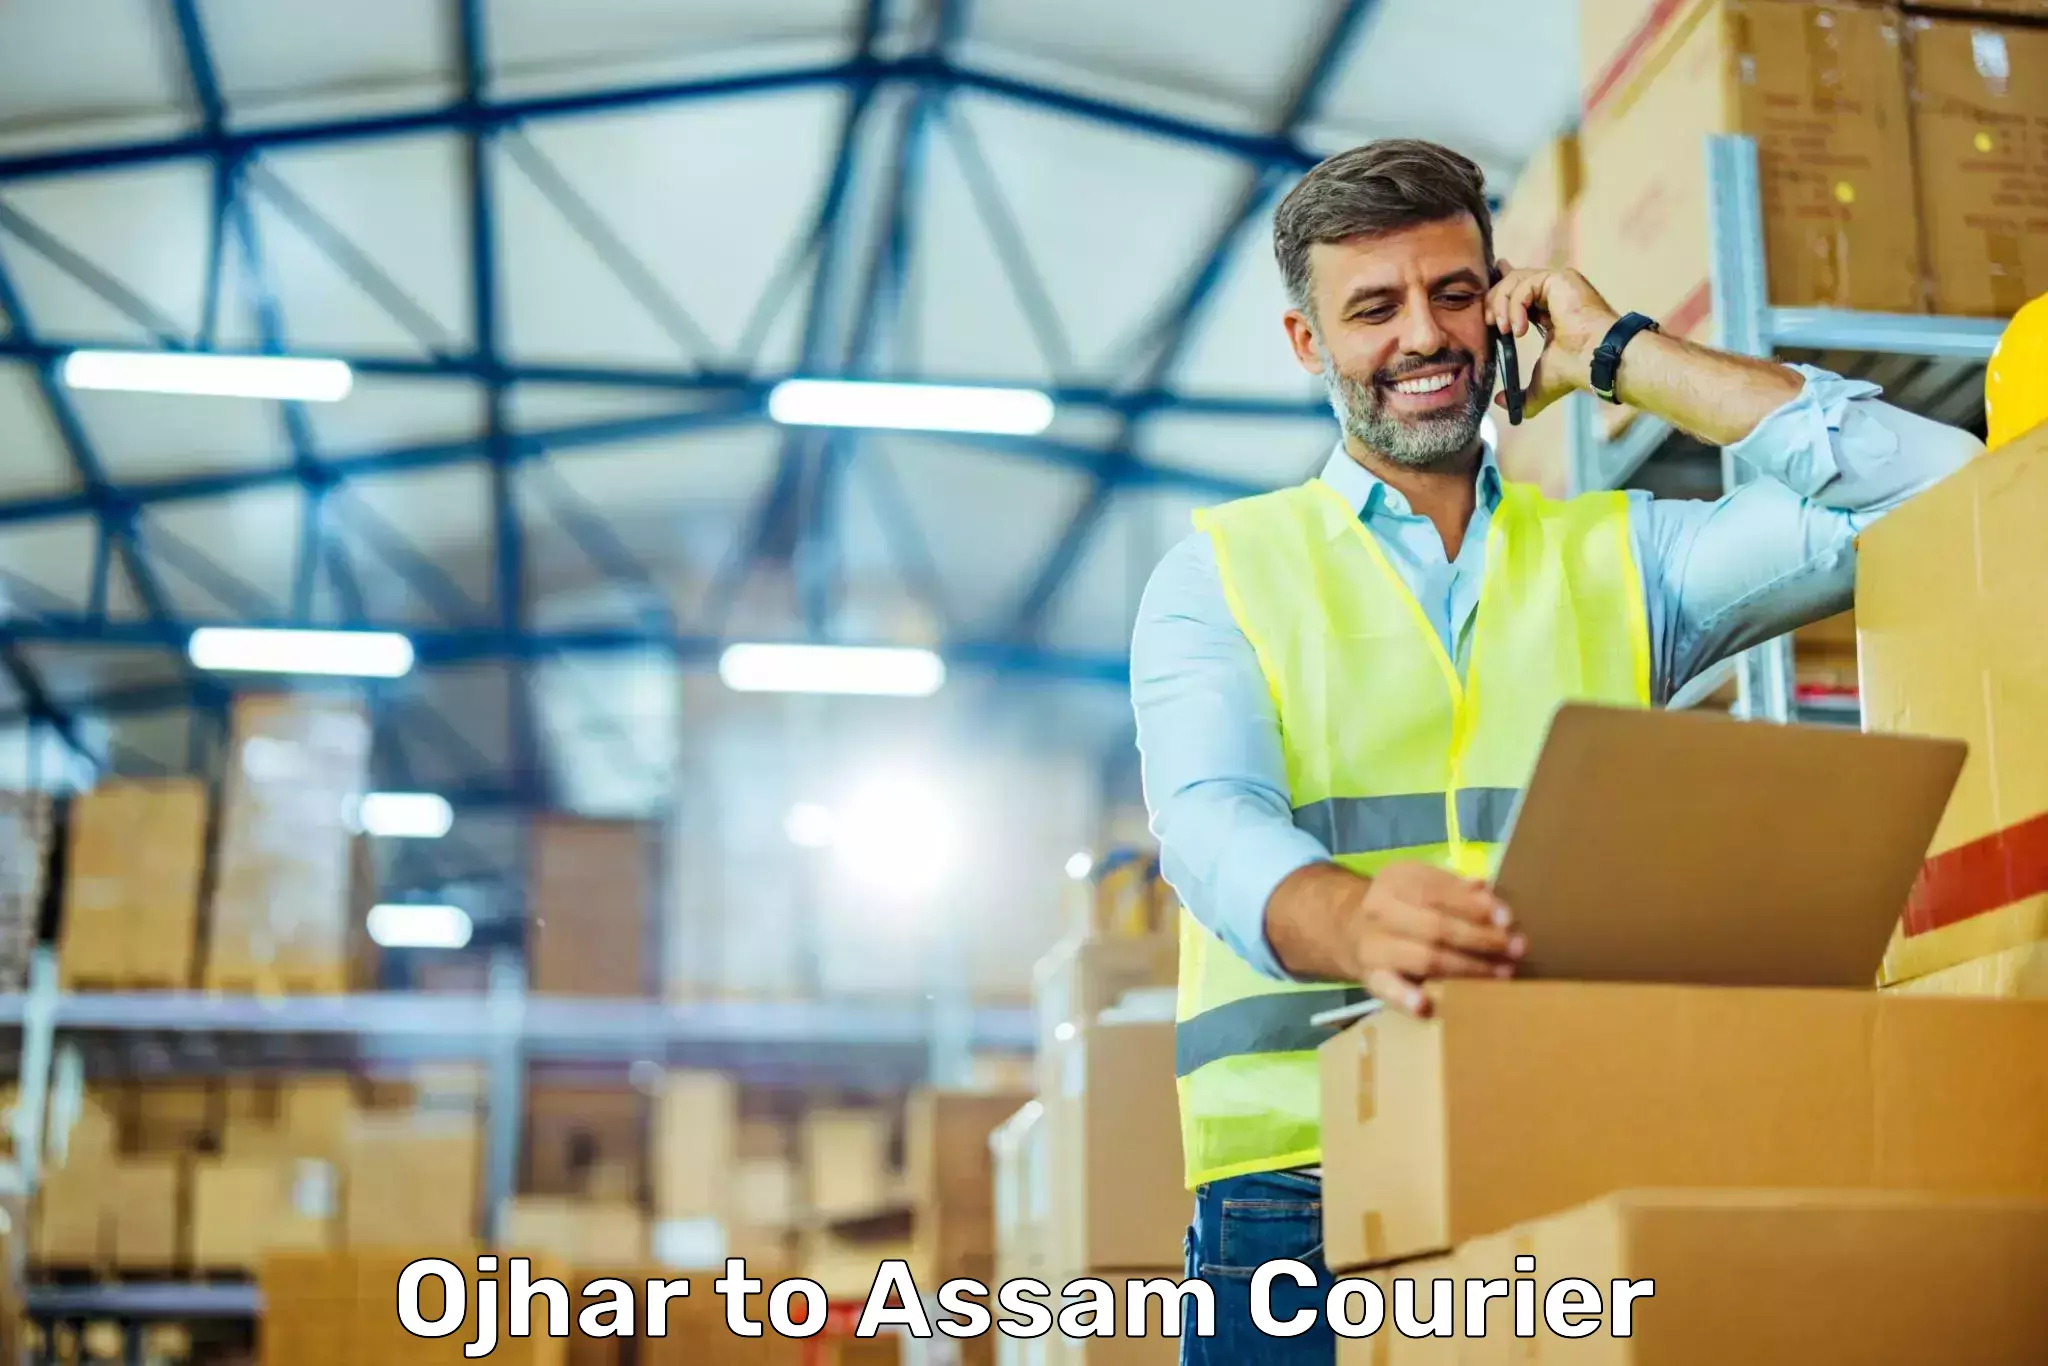 Efficient parcel transport in Ojhar to Silchar